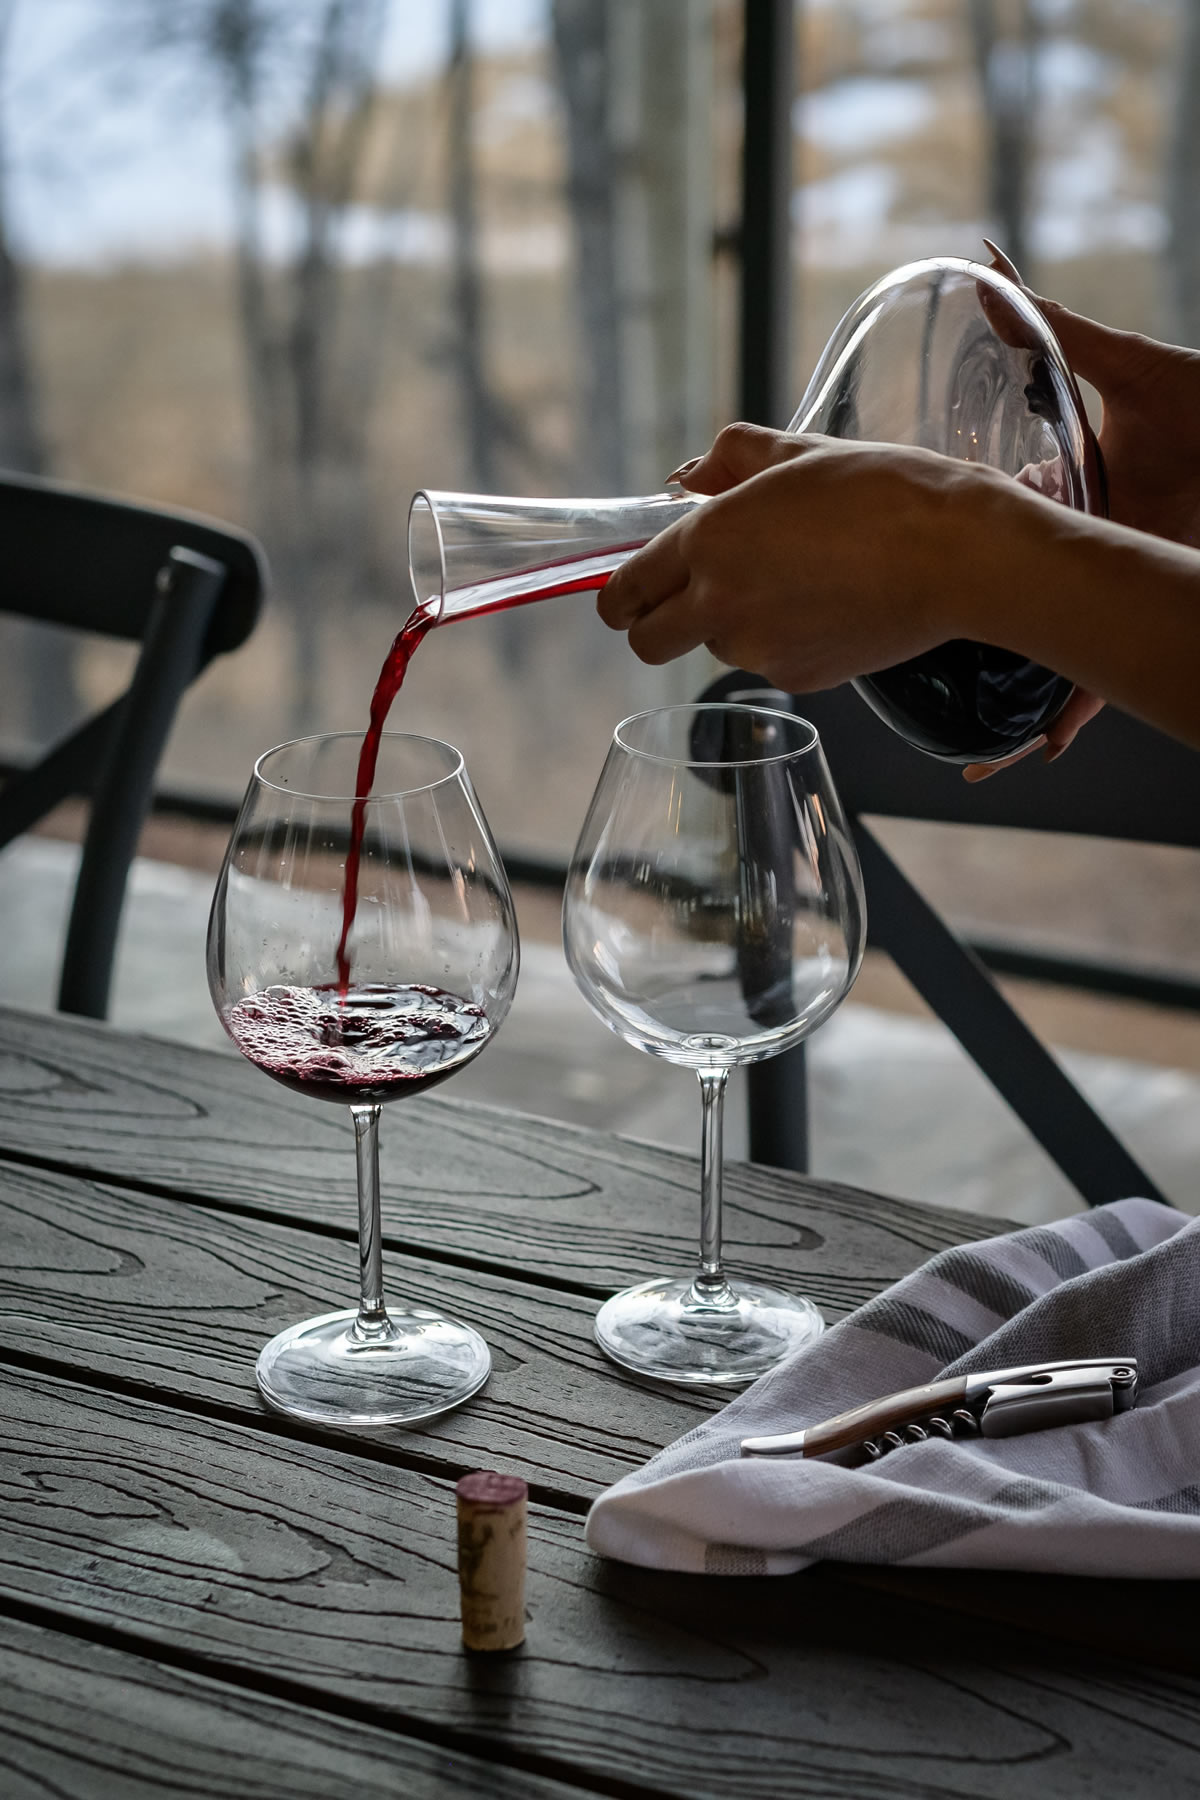 Decantare il vino: quando, perché e come